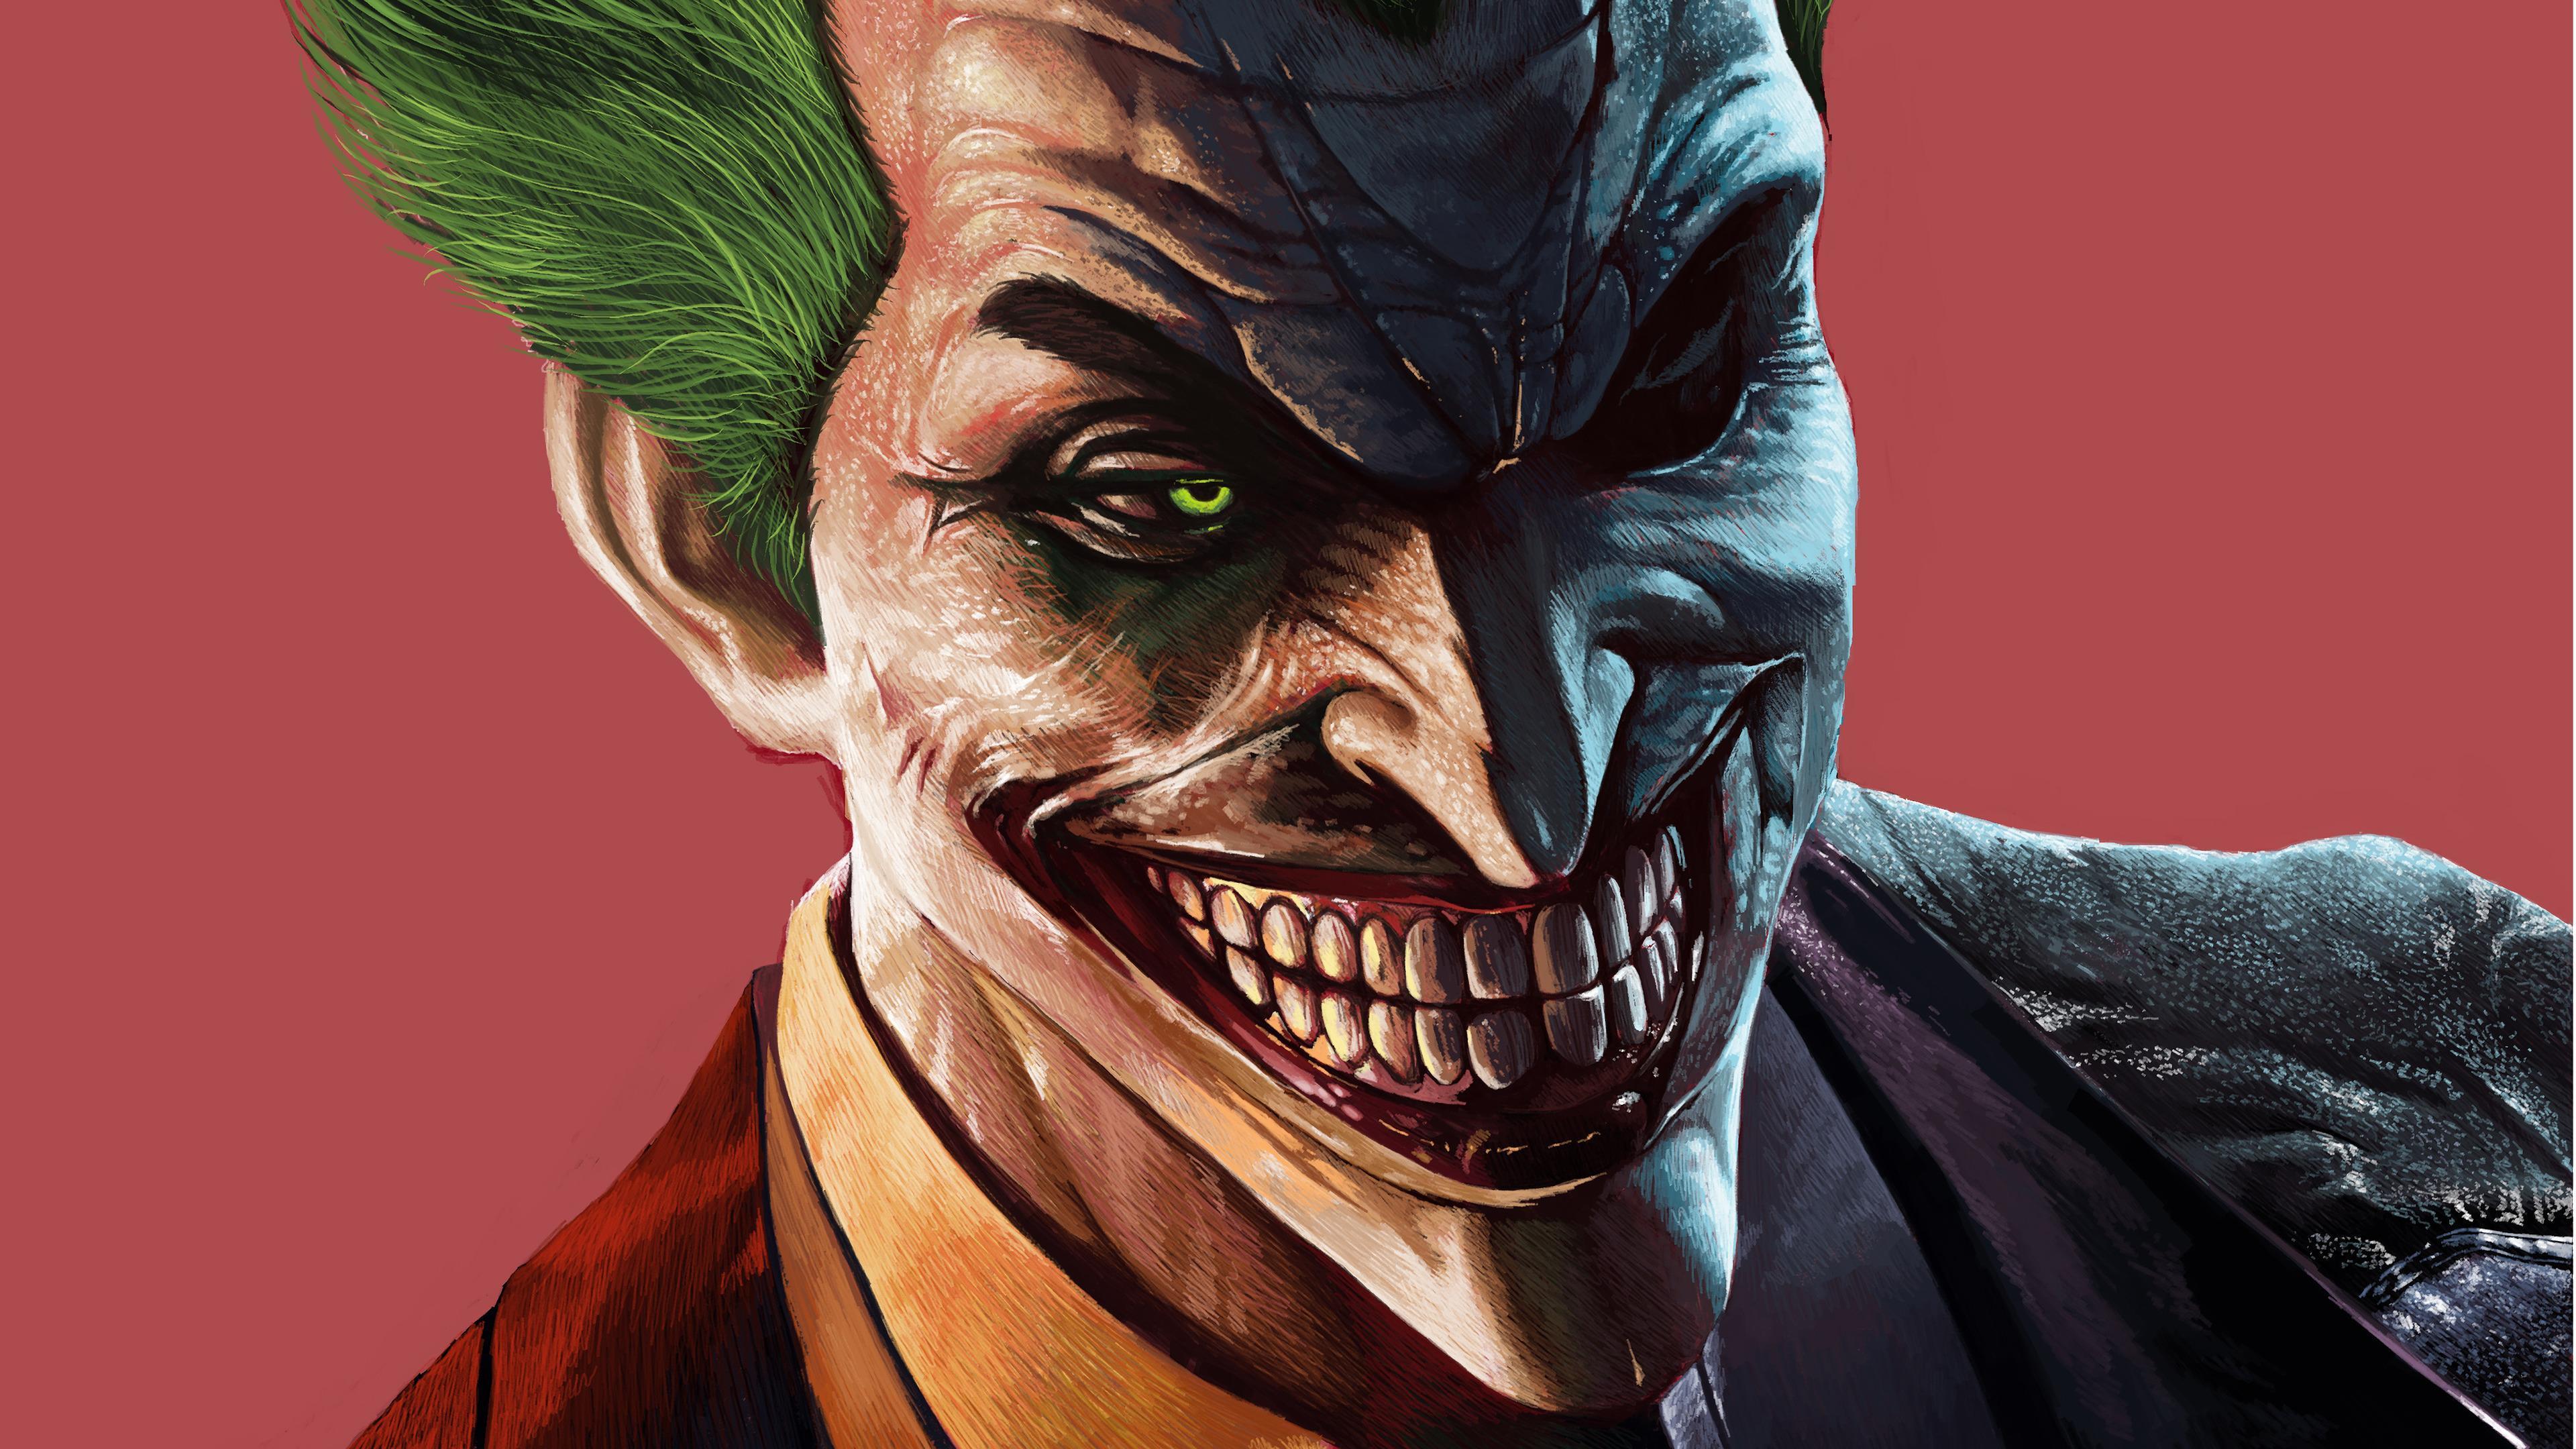 HD wallpaper, 4K, Joker